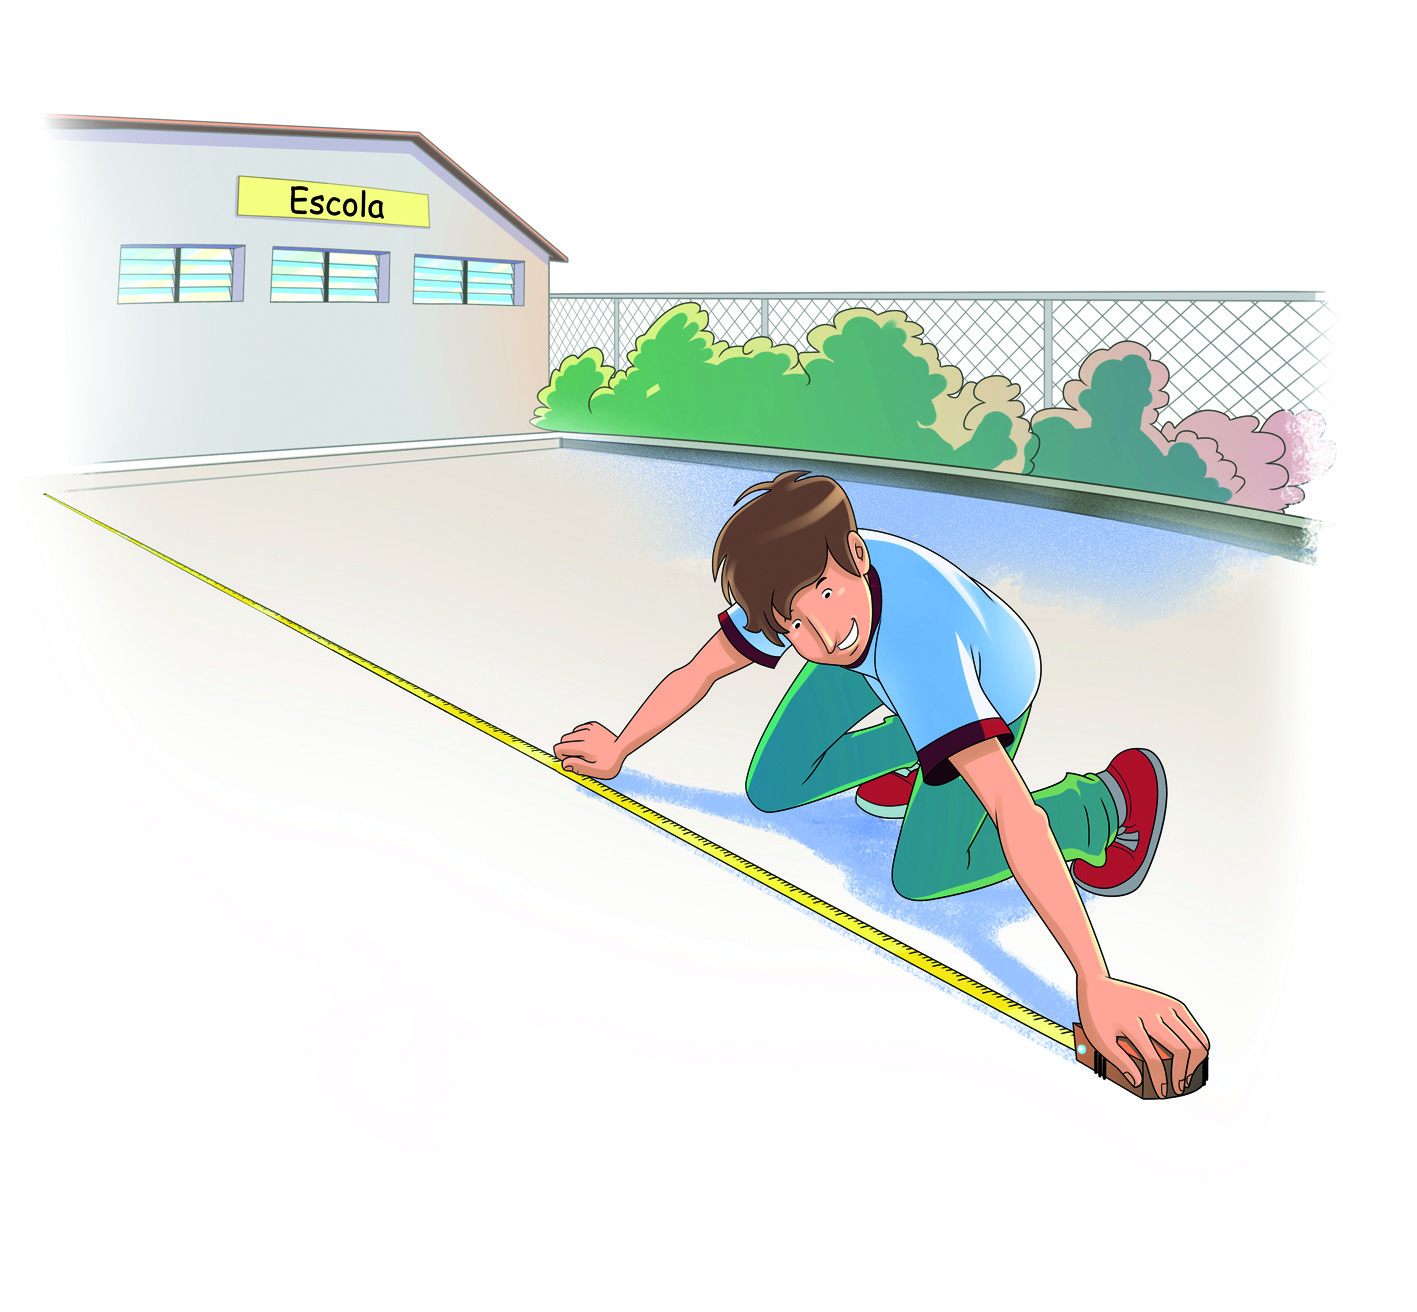 Ilustração. Rapaz de cabelo castanho, blusa azul e calça verde mede um comprimento no chão. Ele utiliza uma trena.